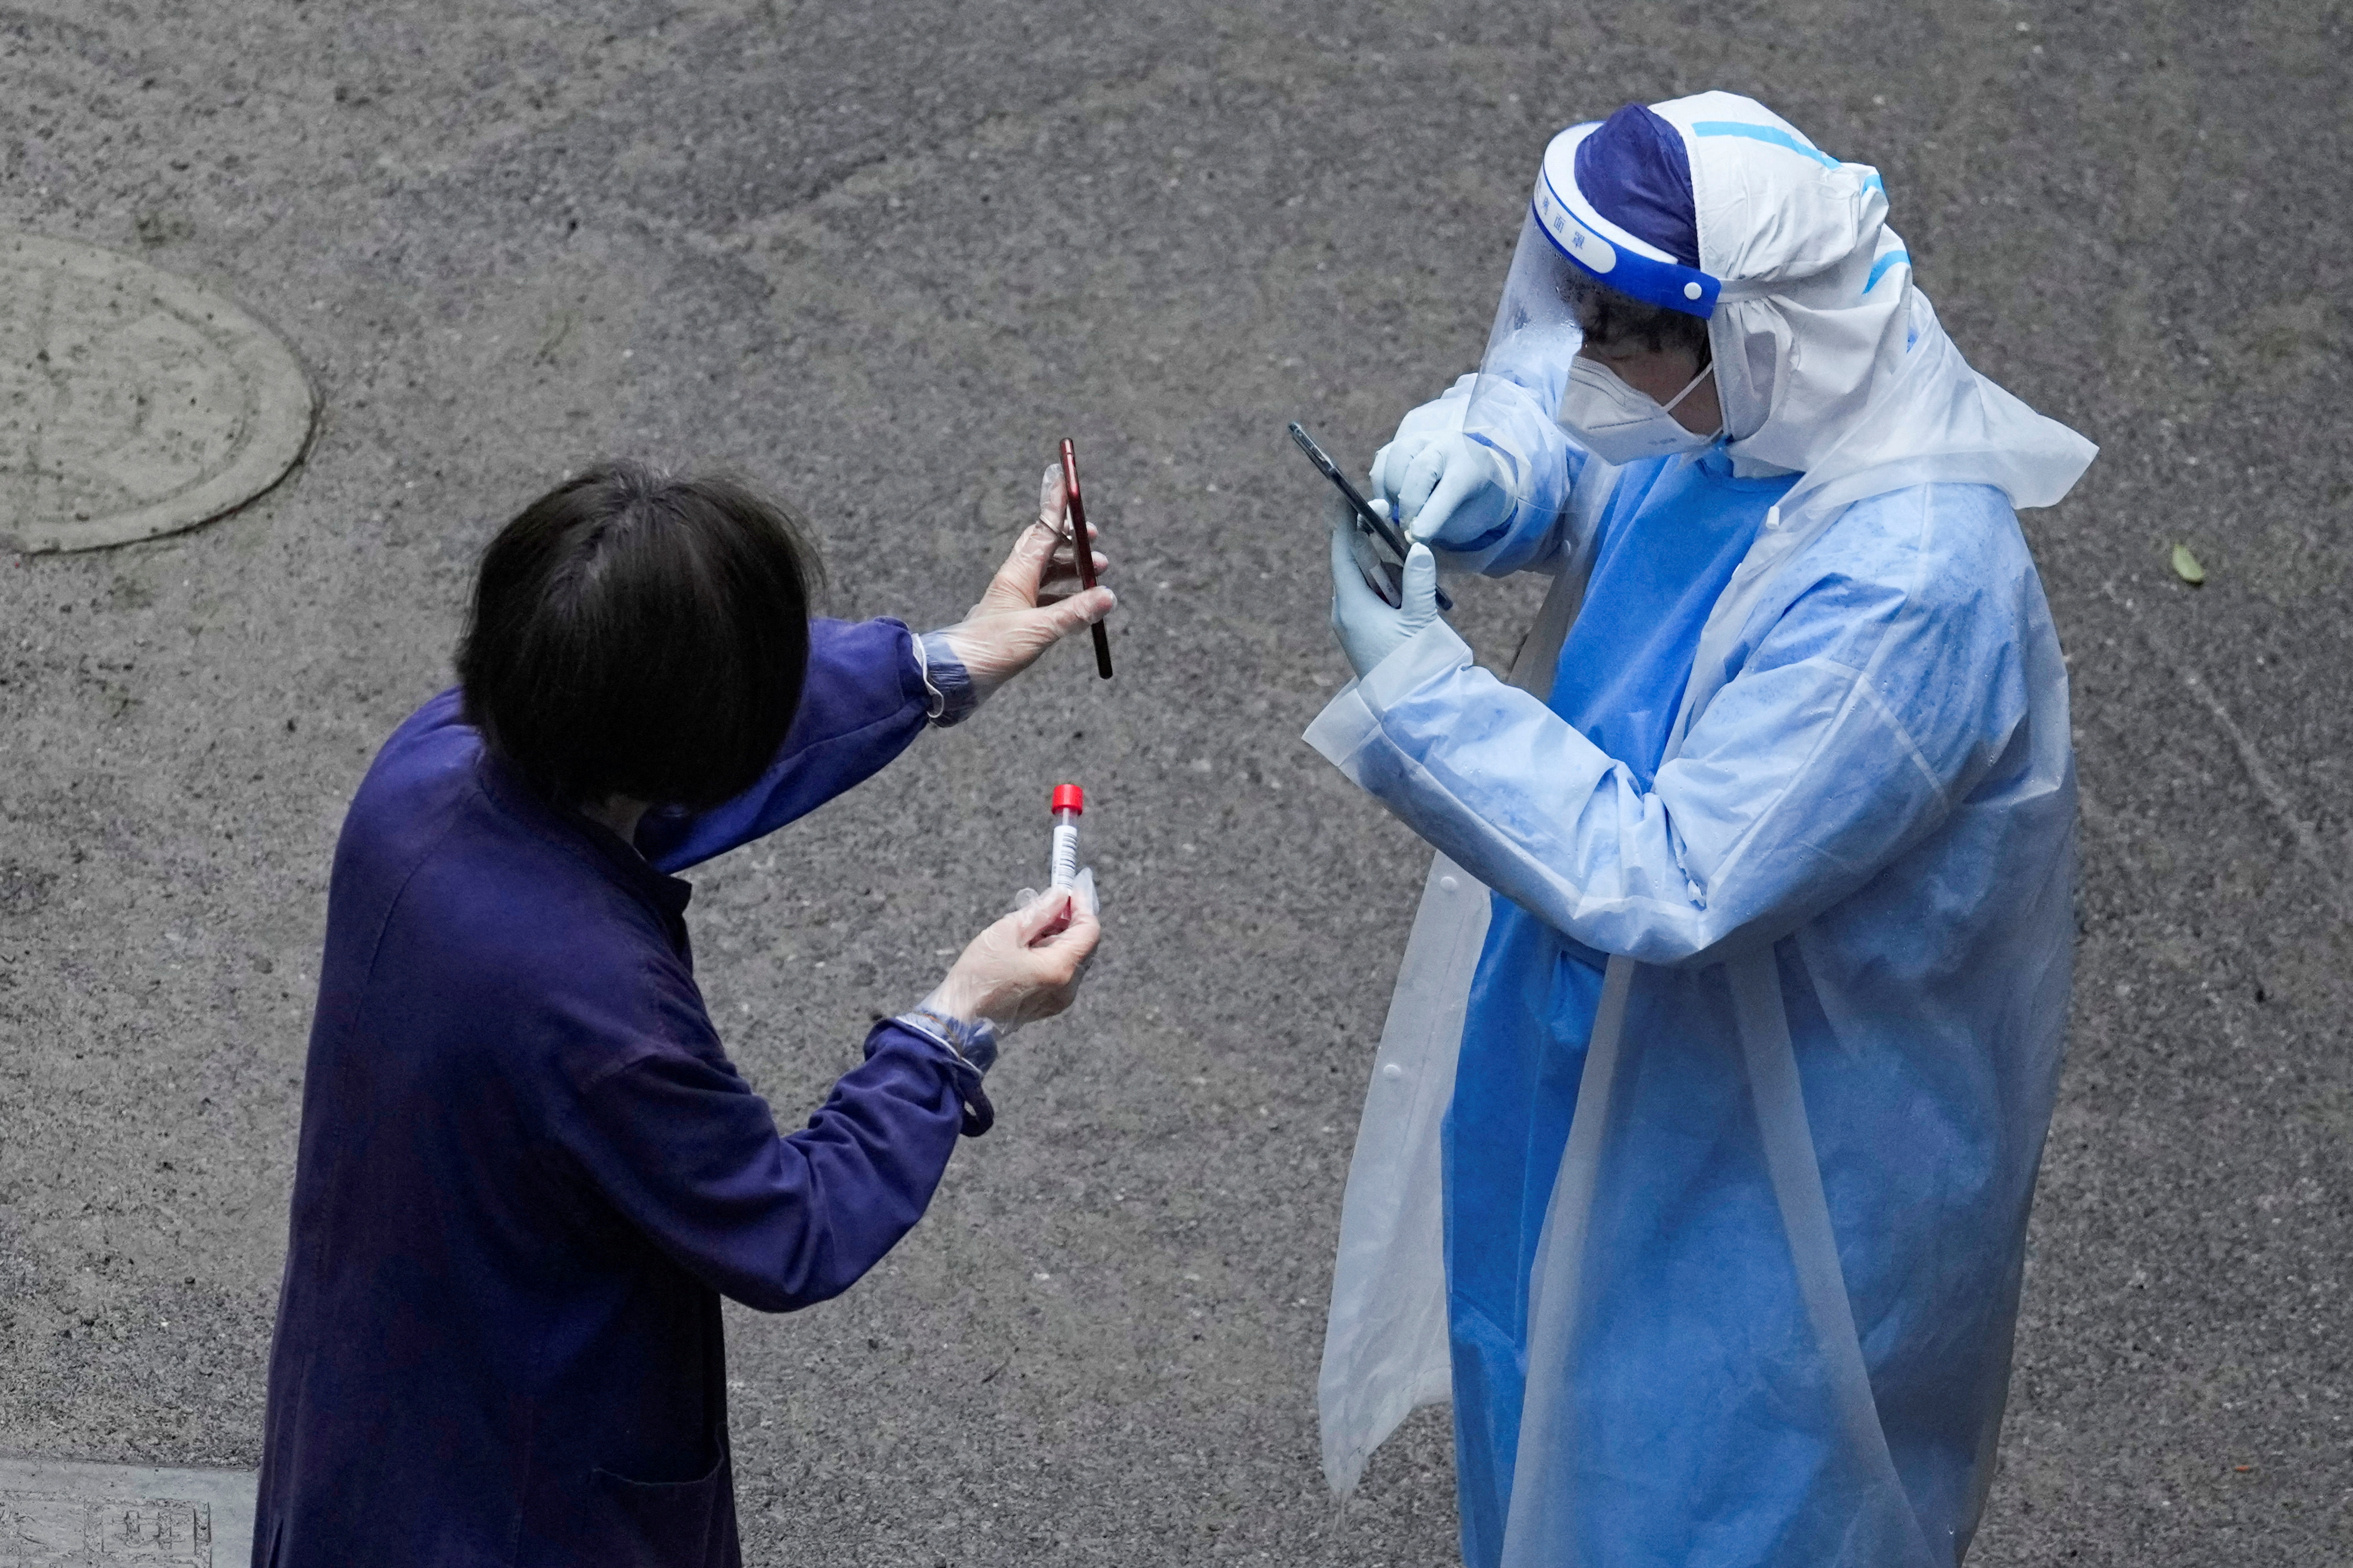 Un trabajador con traje protector verifica el código QR en el teléfono de un residente para realizar pruebas de ácido nucleico durante el encierro, en medio de la pandemia de la enfermedad por coronavirus (COVID-19), en Shanghái, China